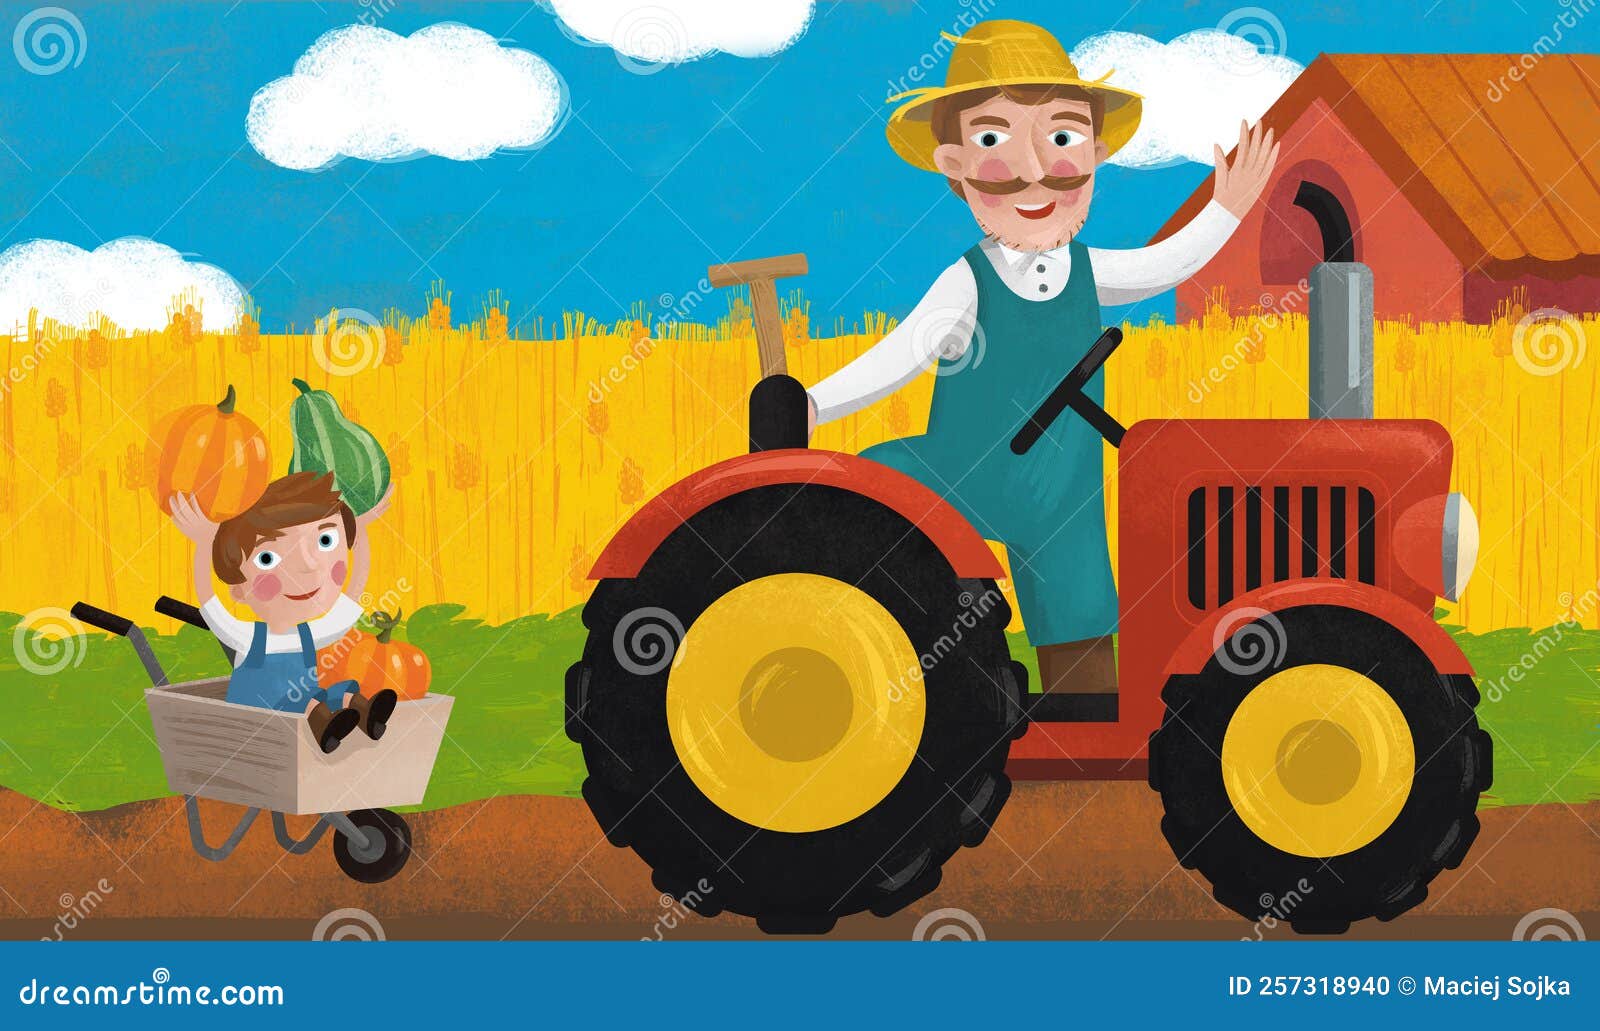 trator desenho animado personagem mascote para agricultura, veículo,  crianças livro. vetor gráfico. 27504559 Vetor no Vecteezy